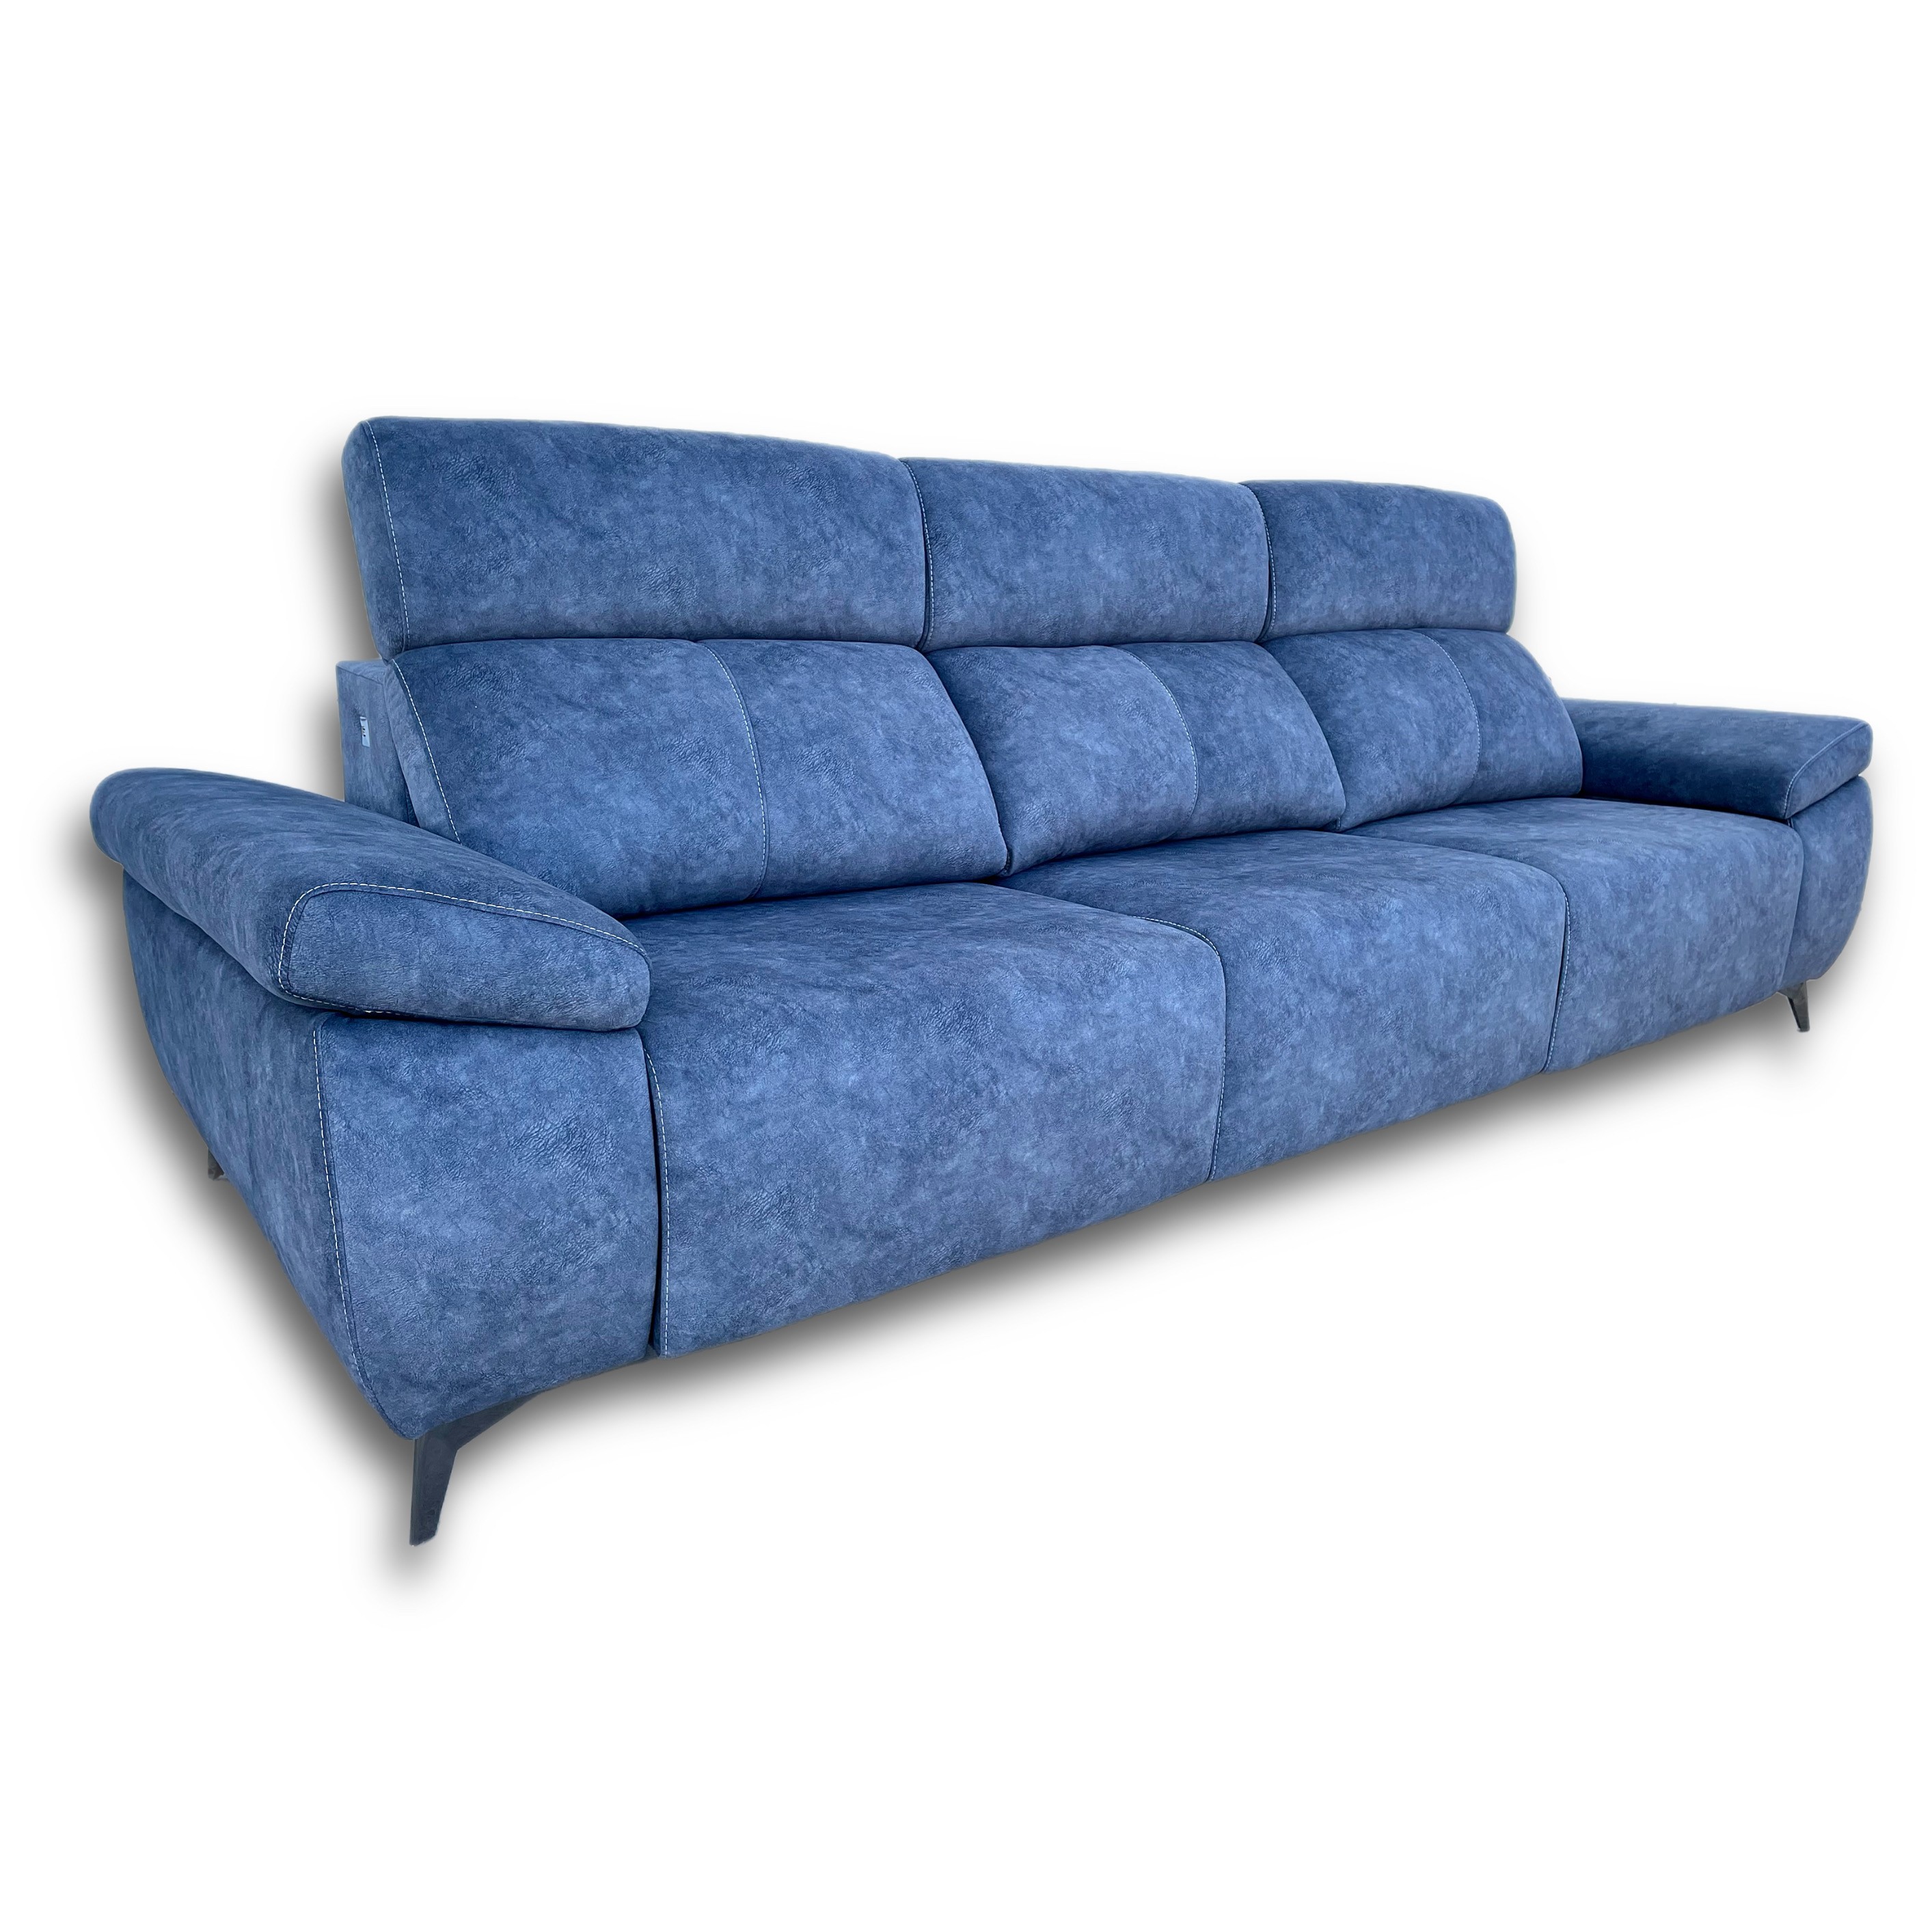 Tienda de sofás a medida - Comprar sofá de piel y antimanchas